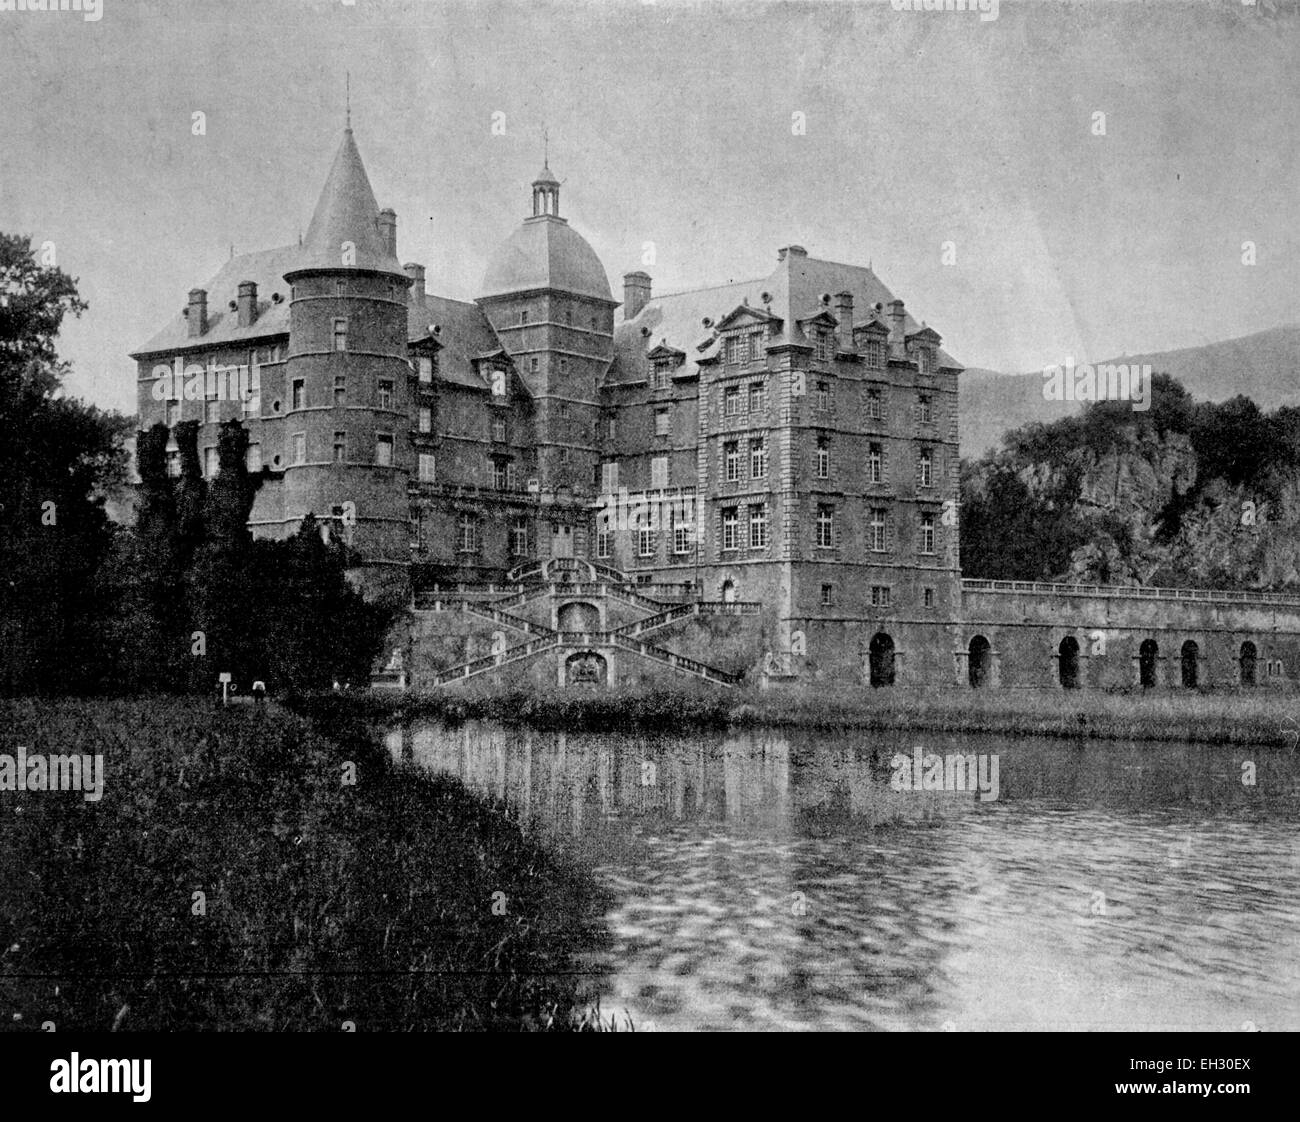 frühe Autotype des Chateau de Vizille Palastes, Vizille, Departement ist?? Re, Frankreich, 1880 Stockfoto